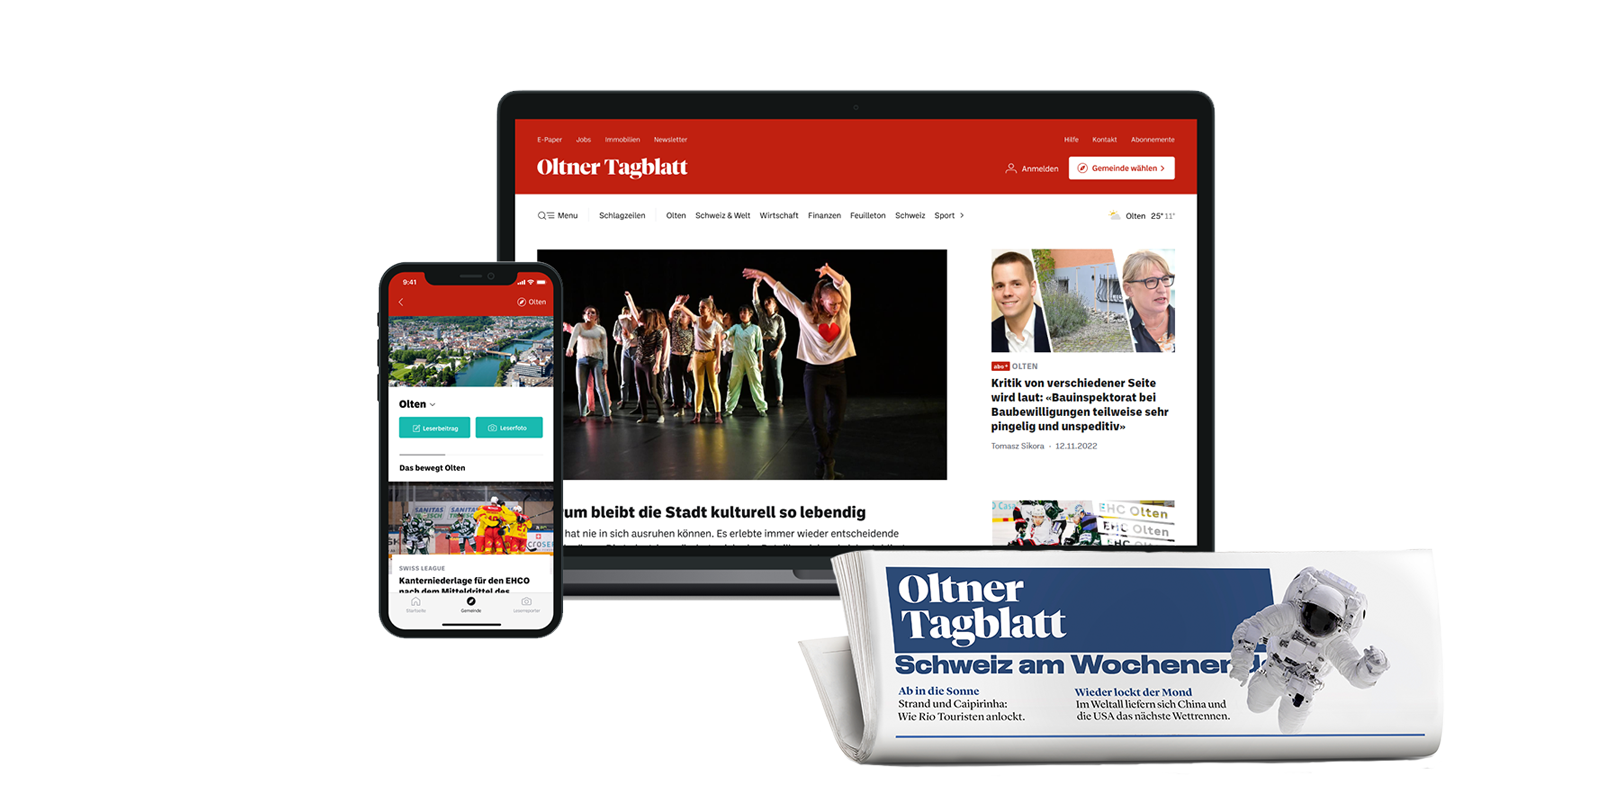 Oltner Tagblatt, oltnertagblatt.ch